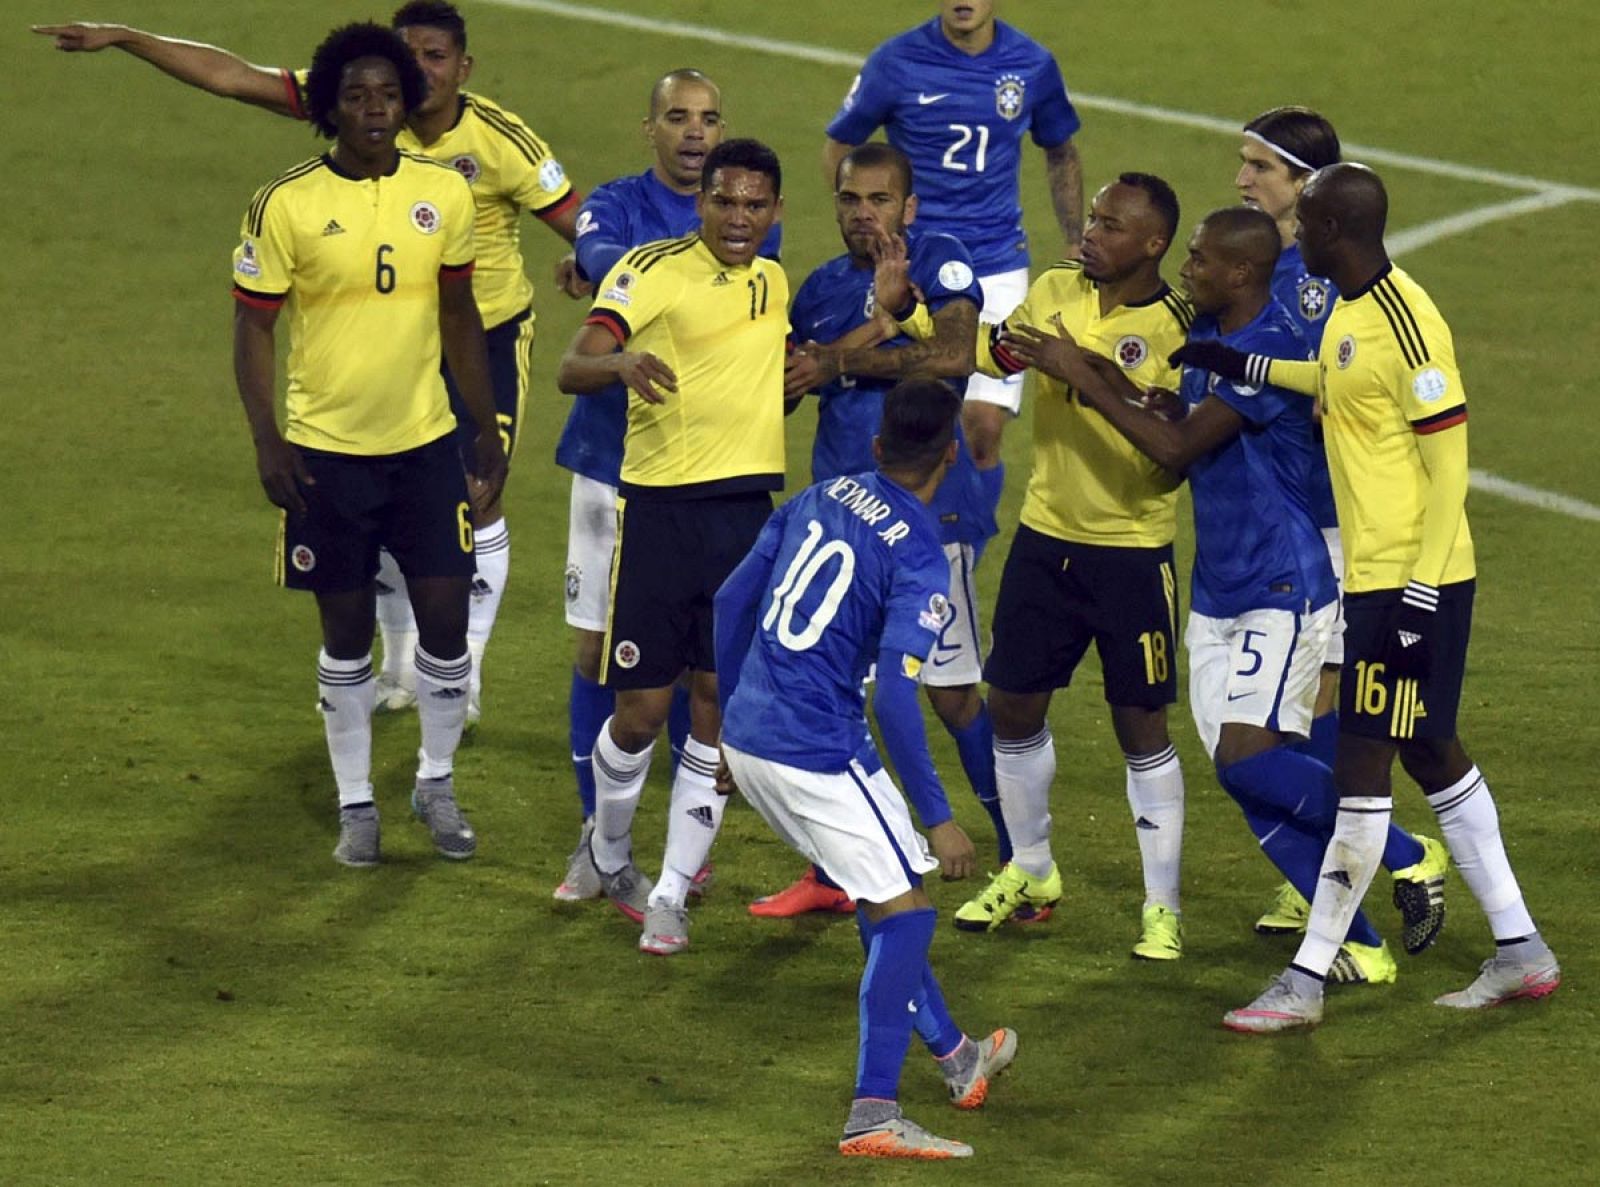 Imágenes de la tangana entre Neymar y Bacca en el partido que disputaron Brasil y Colombia.